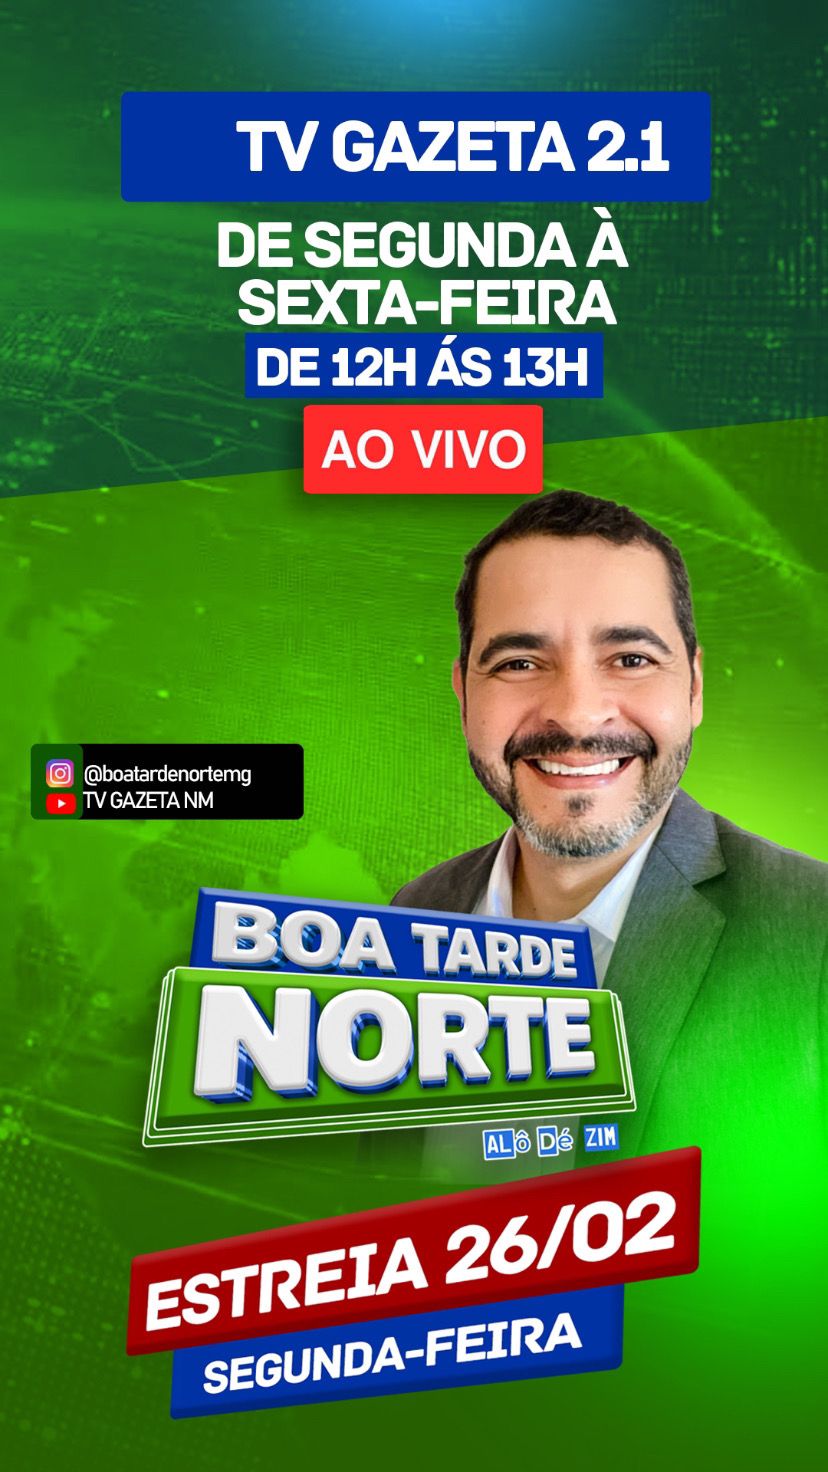 Boa Tarde Norte: Nova estreia na TV Gazeta Norte Mineira 2.1